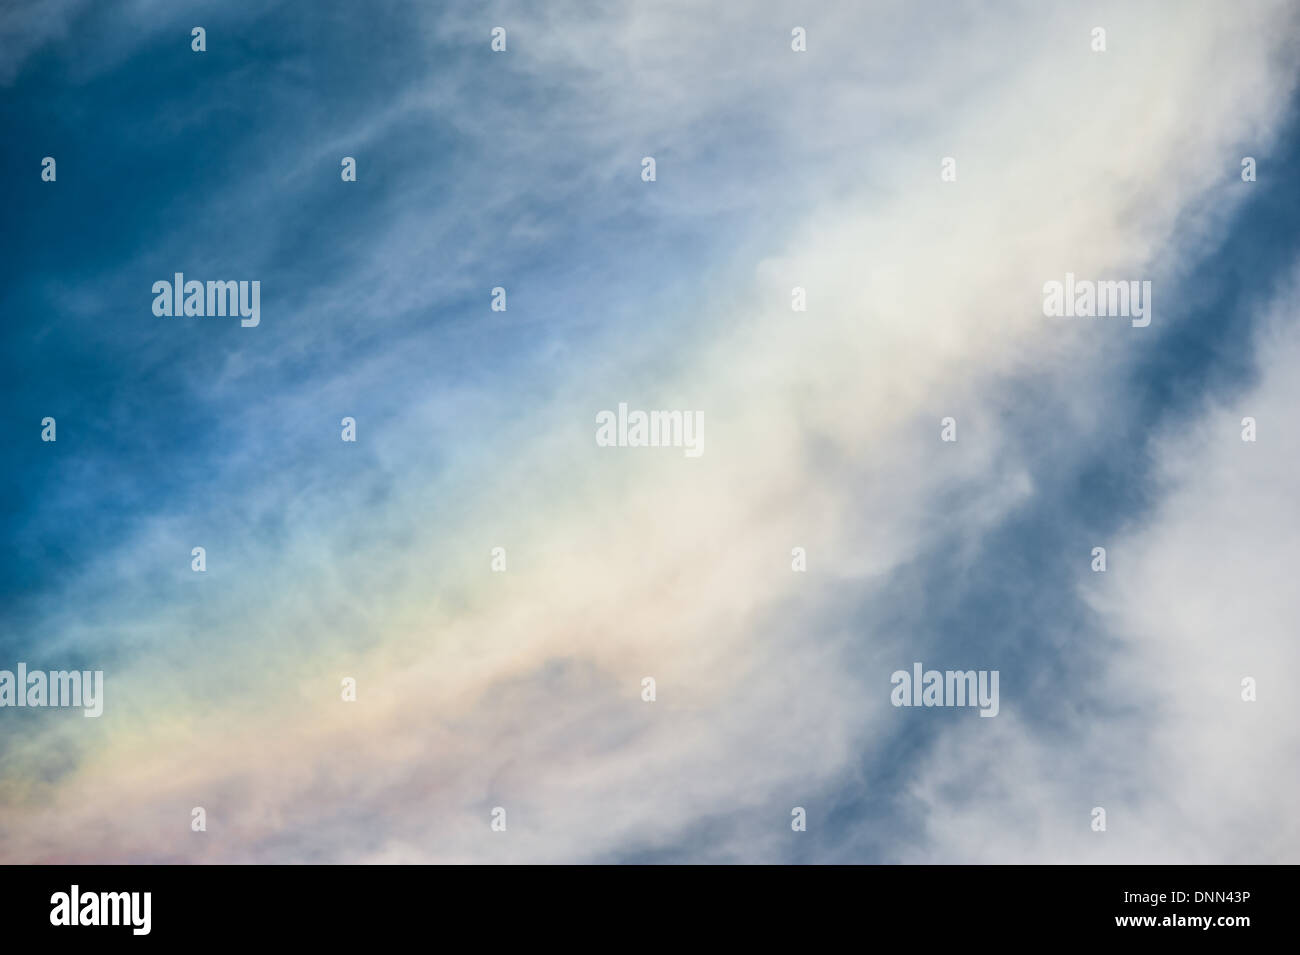 Die abstrakte Schönheit der Regenbogen Wolken (oder "Feuer Regenbogen") durch Sonnenlicht verursacht durch Eiskristalle. Stockfoto